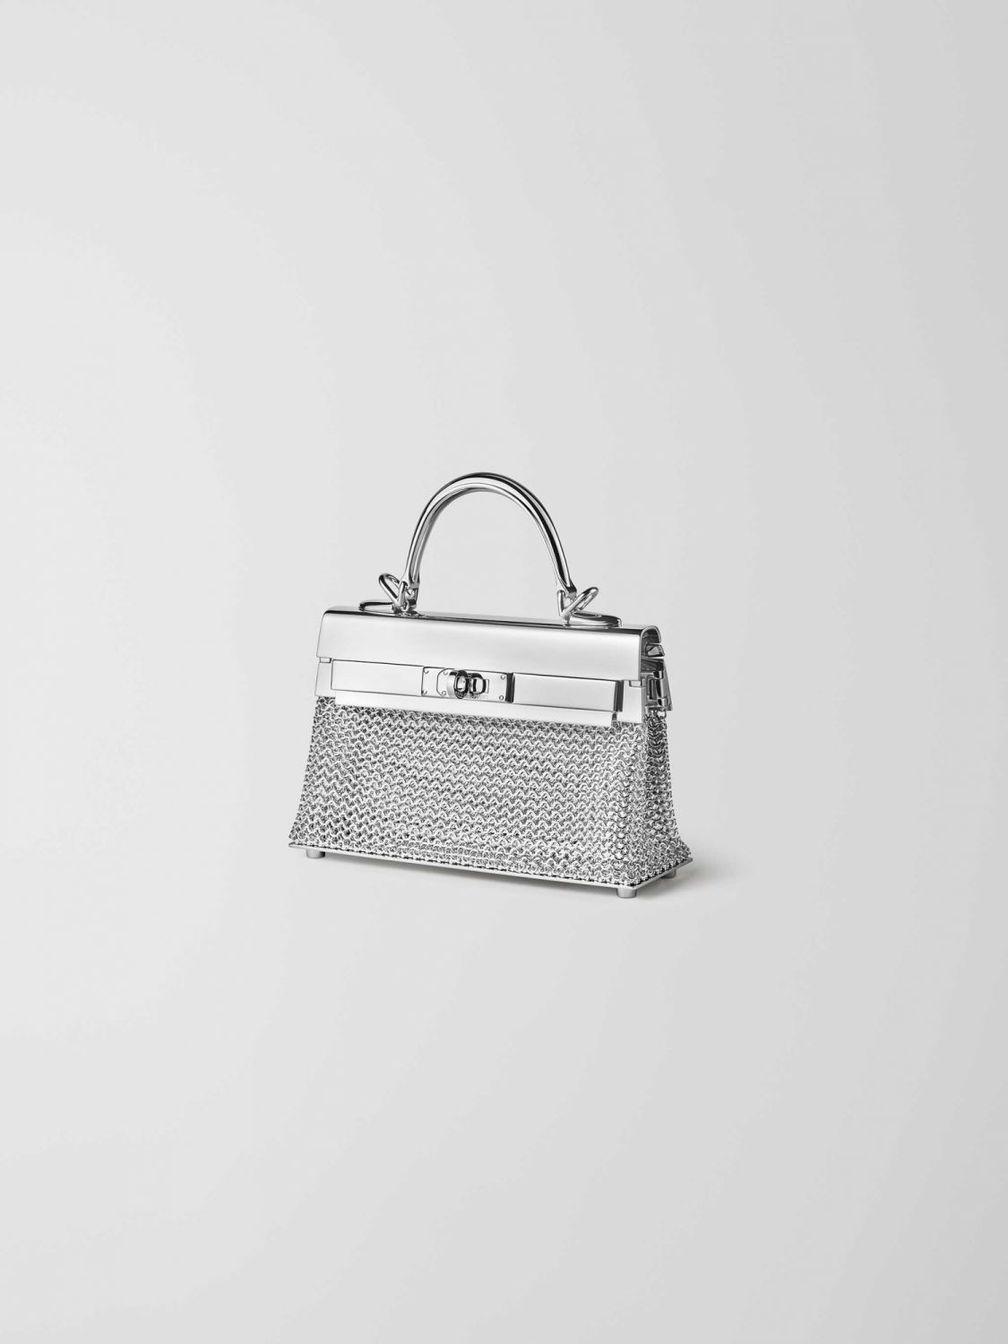 Hermès представляет коллекцию, вдохновленную моделью сумки Kelly